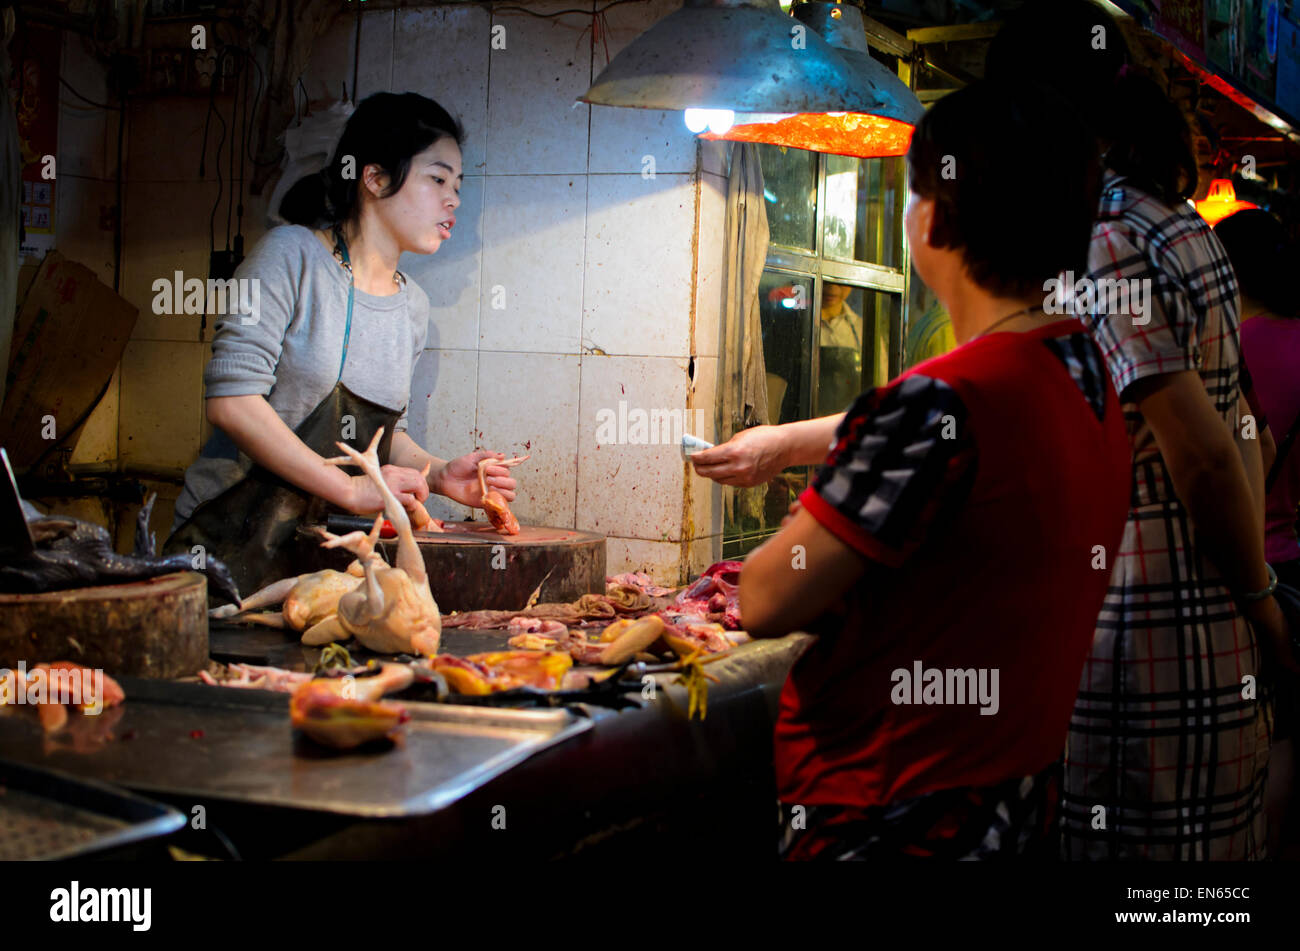 Cliente que compra productos frescos de aves de corral a una joven carnicero en un mercado asiático. Mercado interior; Guangzhou, China; mujer; mujeres; los clientes Foto de stock